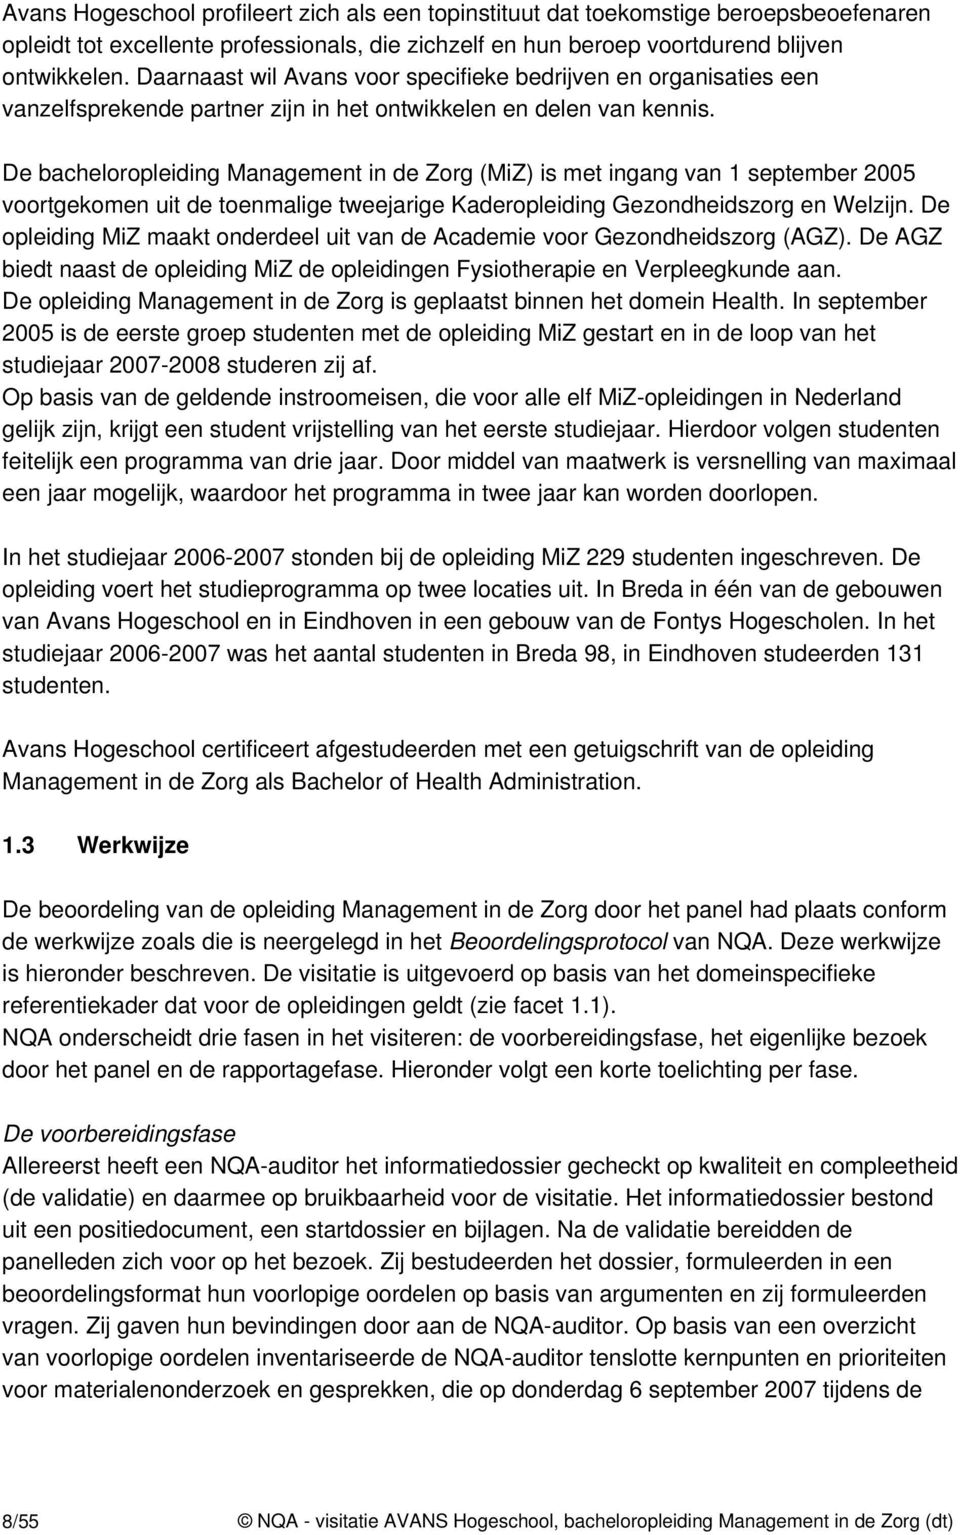 De bacheloropleiding Management in de Zorg (MiZ) is met ingang van 1 september 2005 voortgekomen uit de toenmalige tweejarige Kaderopleiding Gezondheidszorg en Welzijn.